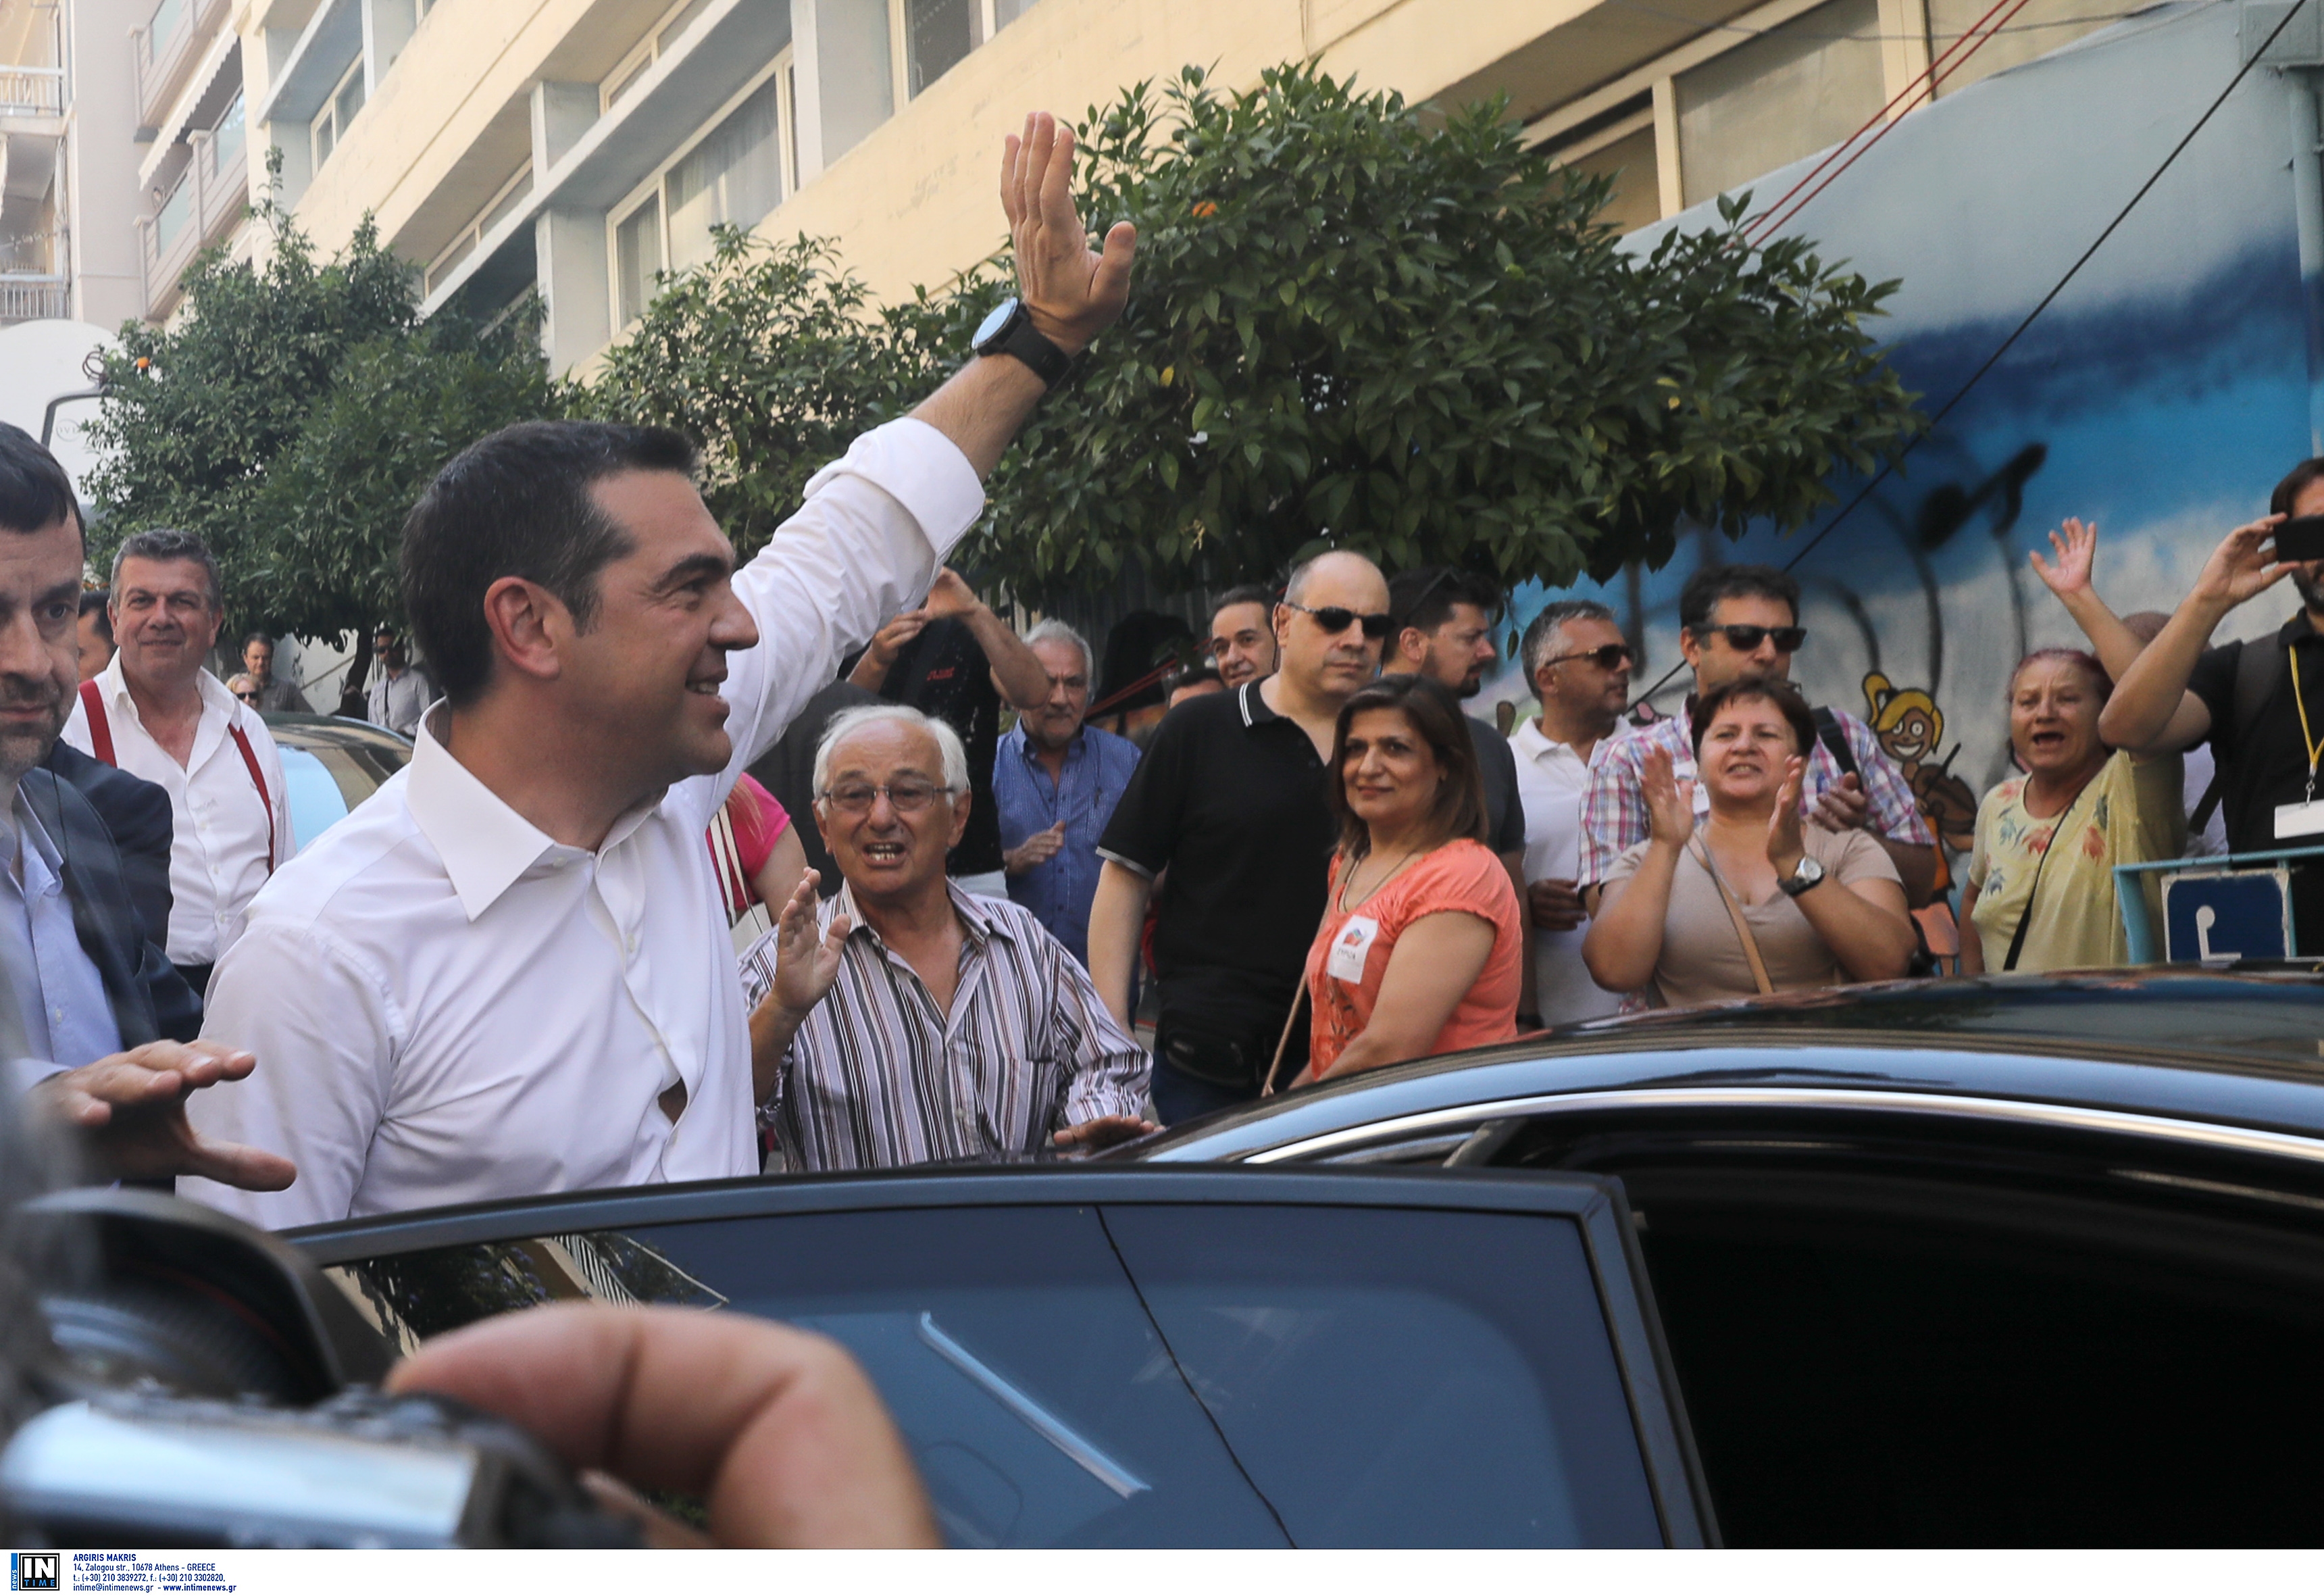 Εκλογές 2019 – La Repubblica: Η Ελλάδα γυρίζει σελίδα και κλείνει την εποχή του Αλέξη Τσίπρα